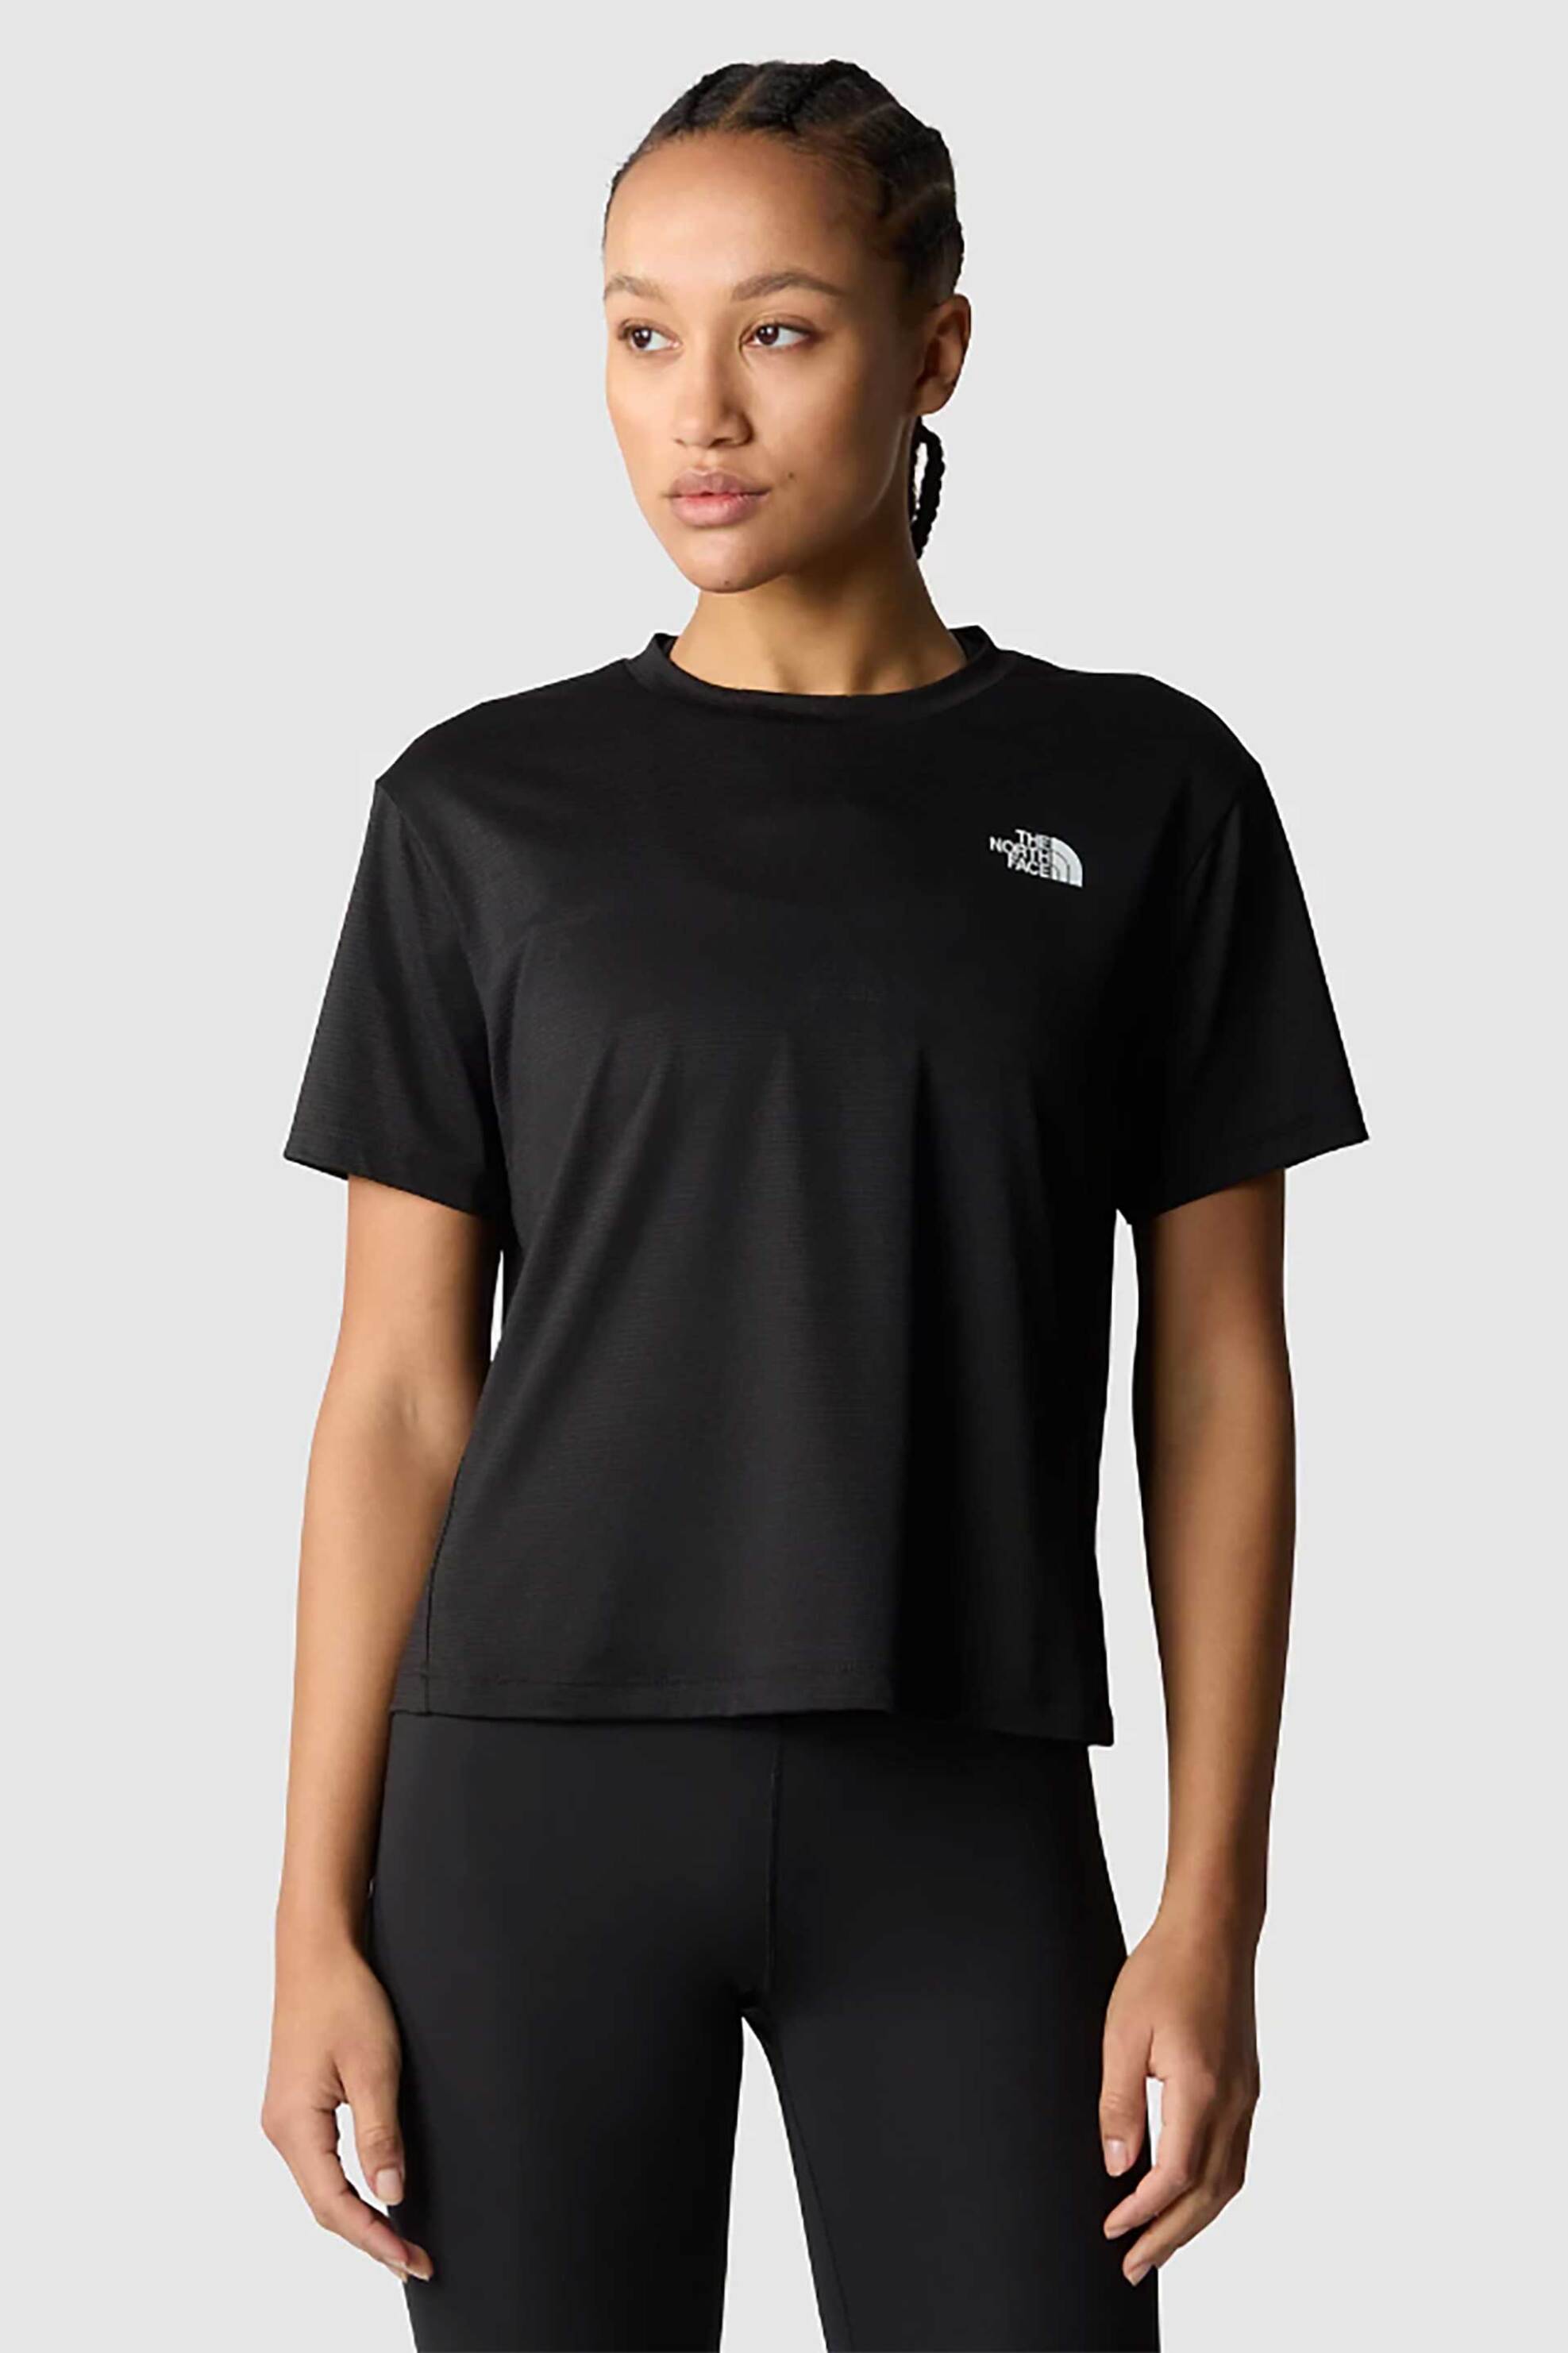 Γυναικεία Ρούχα & Αξεσουάρ > Γυναικεία Ρούχα > Γυναικεία Τοπ > Γυναικεία T-Shirts The North Face γυναικείο T-shirt μονόχρωμο με contrast logo prints "Flex Circuit" - NF0A87JVJK31 Μαύρο